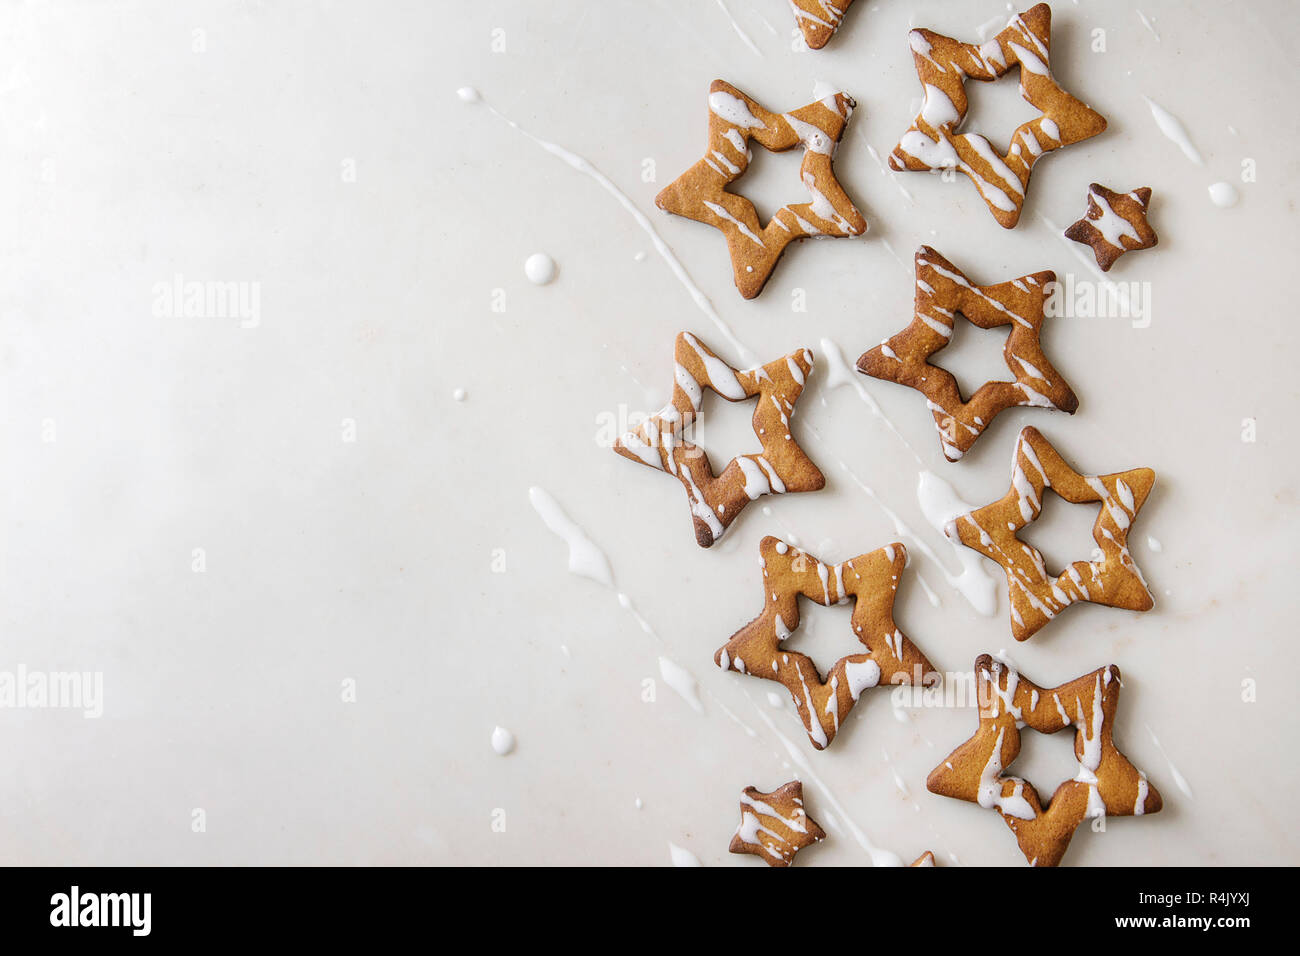 Hausgemachte Weihnachten Stern Zucker caramel Cookies mit Zuckerguss über weißem Marmor Hintergrund. Flach, kopieren. Süße Weihnachten oder Neujahr Geschenk. Stockfoto